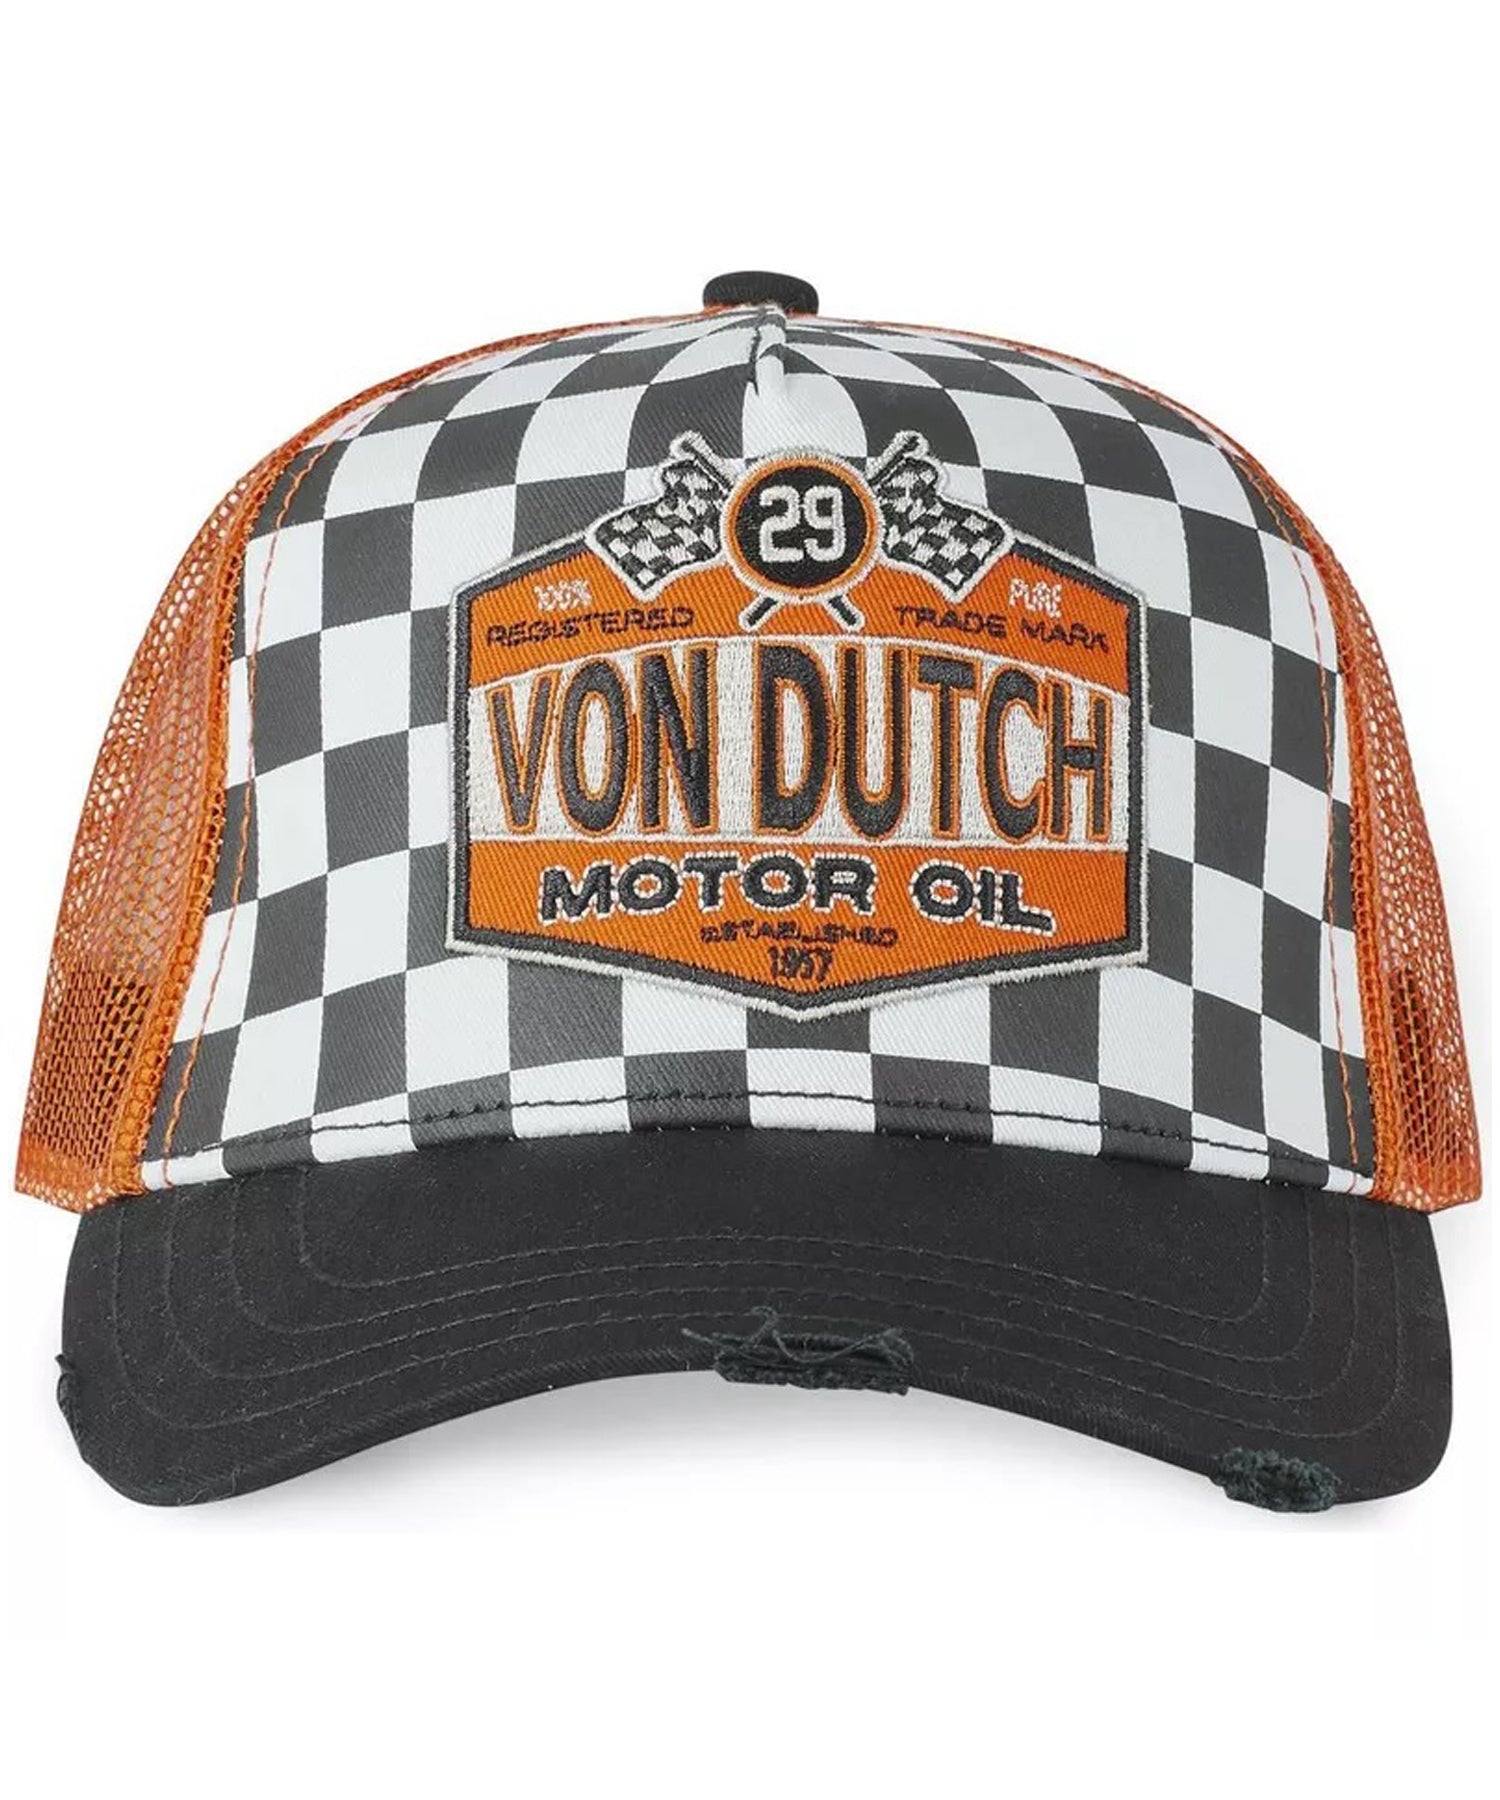 von-dutch-gorra-tipo-trucker-oil-color-a-cuadros-malla-color-naranja-ajustablle-logo-von-ducth-en-el-frente